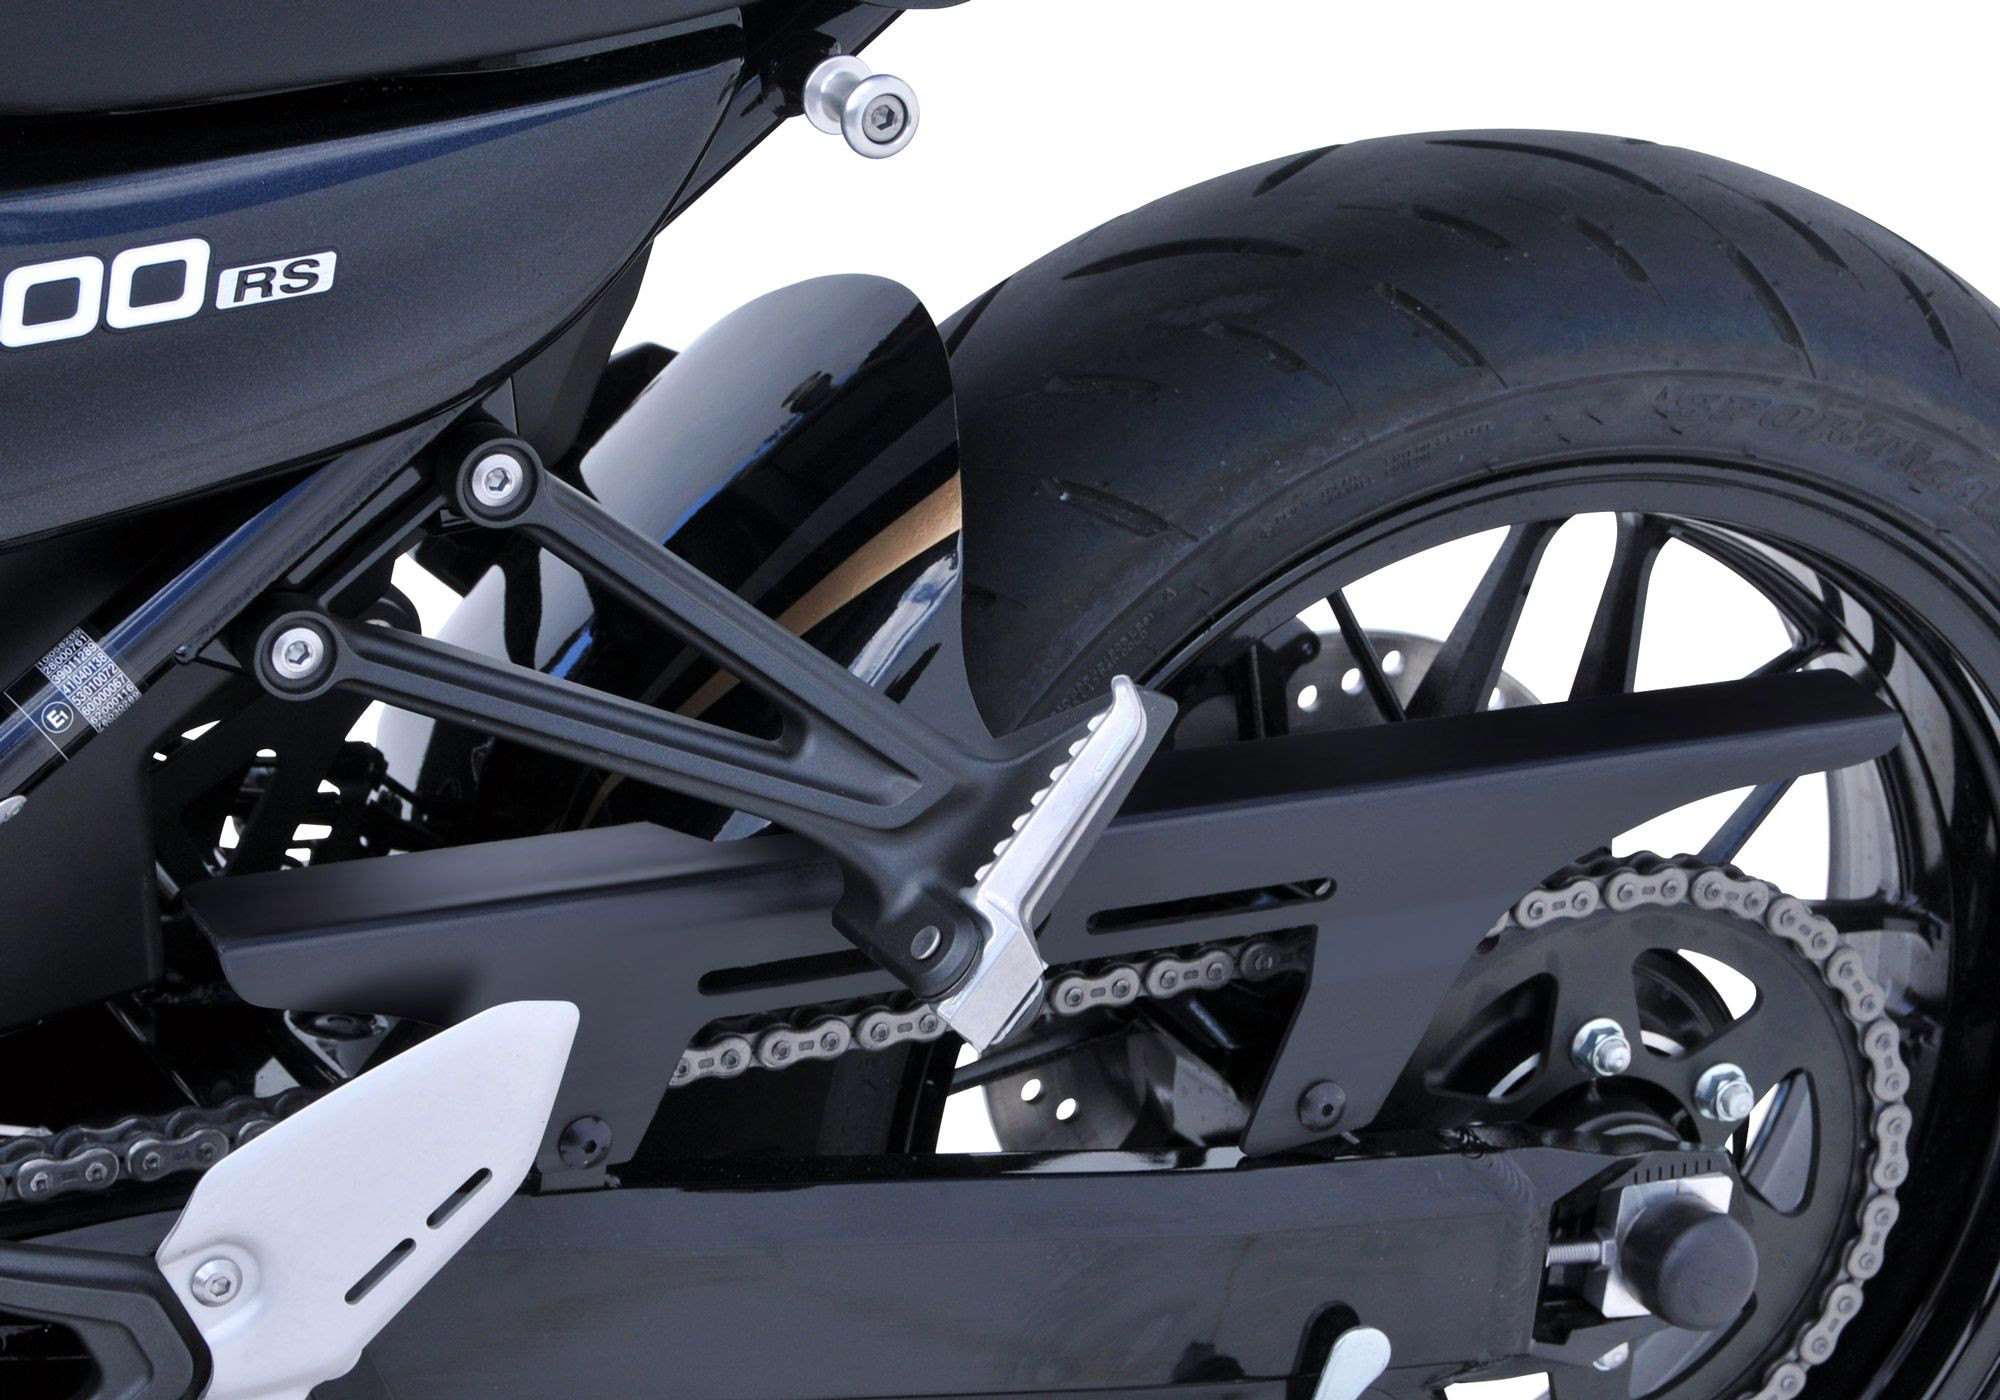 BODYSTYLE Sportsline Hinterradabdeckung schwarz/silber/gold Metallic Spark Black, 660/15Z ABE passt für Kawasaki Z900 RS